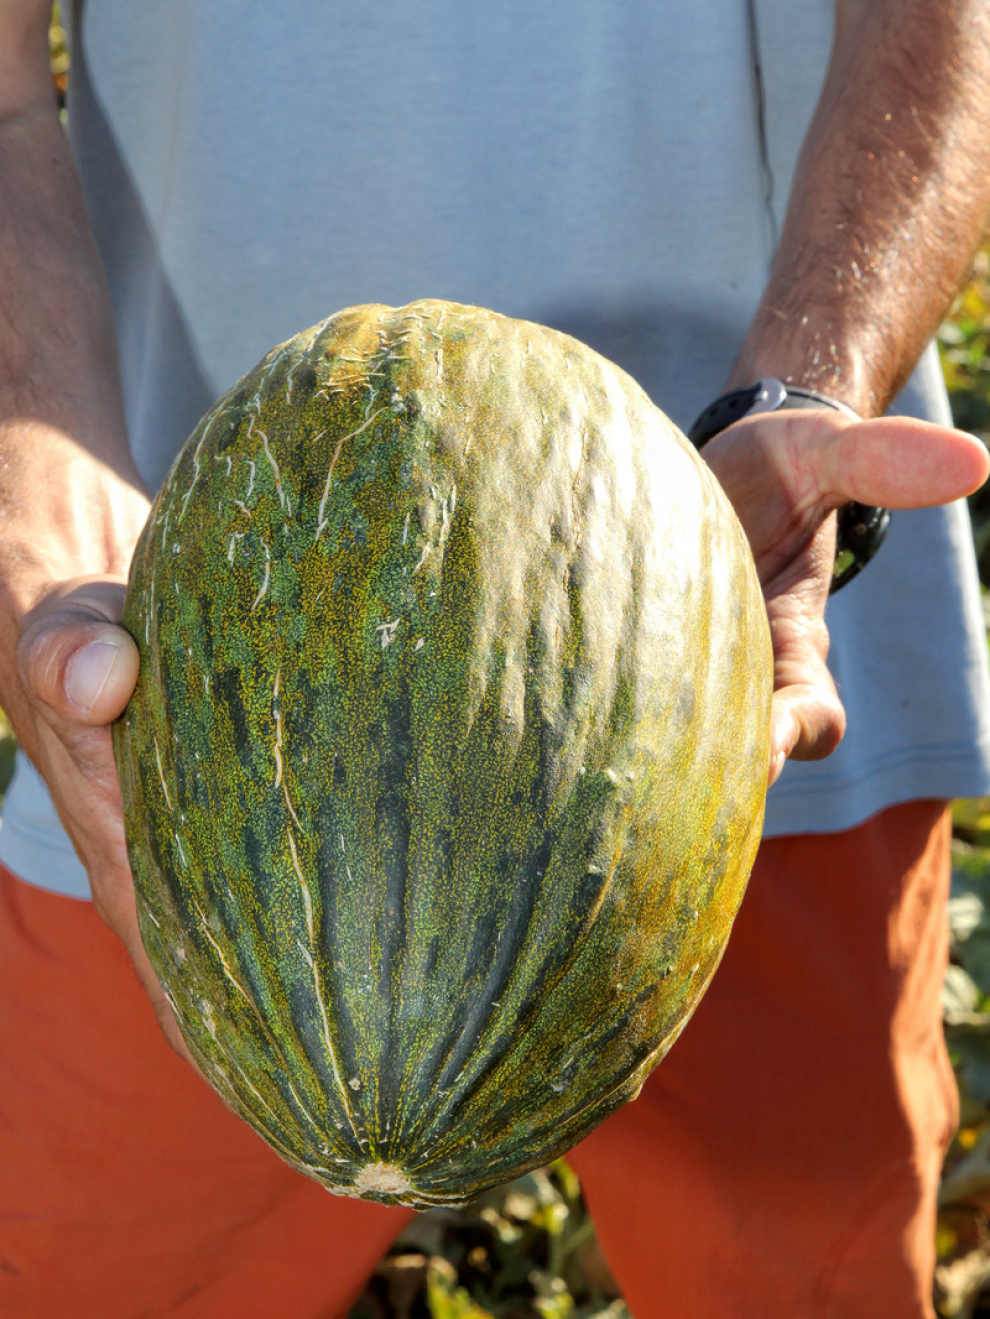 El melón es uno de los frutos más consumidos en verano